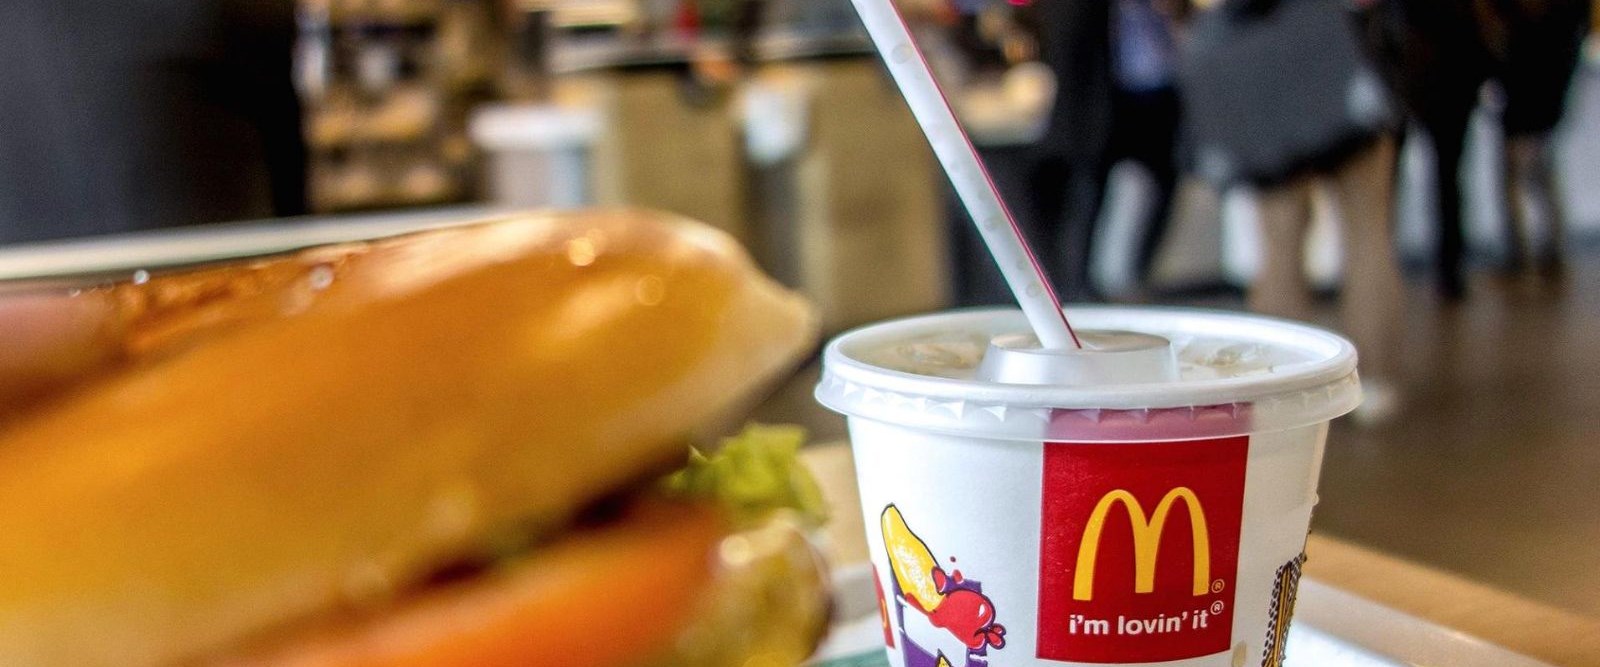 Dünyaca ünlü fast-food devi McDonald’s plastik yerine kağıt kullanacak